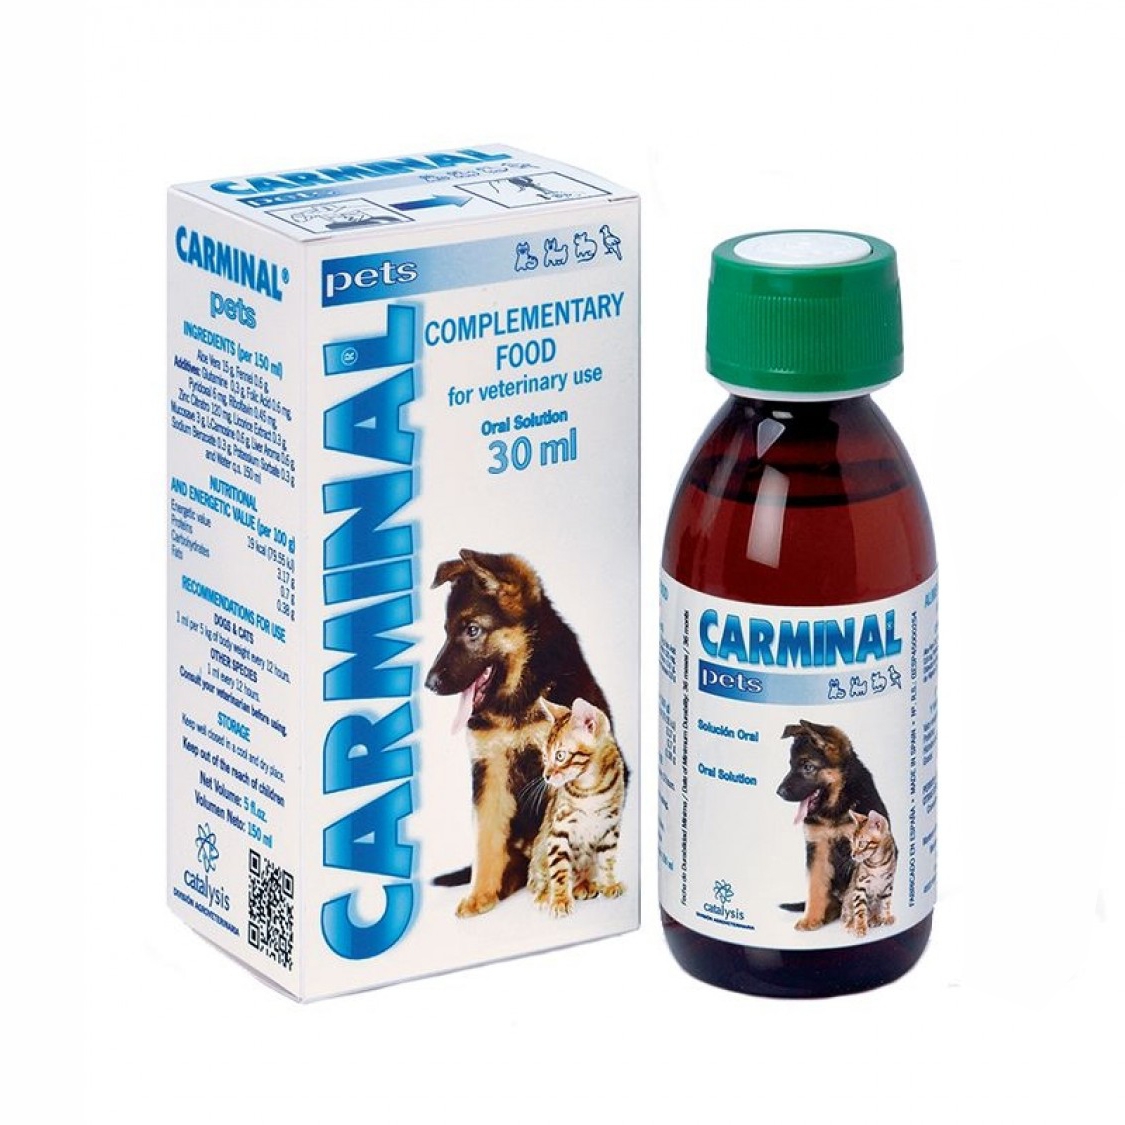 Carminal Pets, 30 ml Catalysis